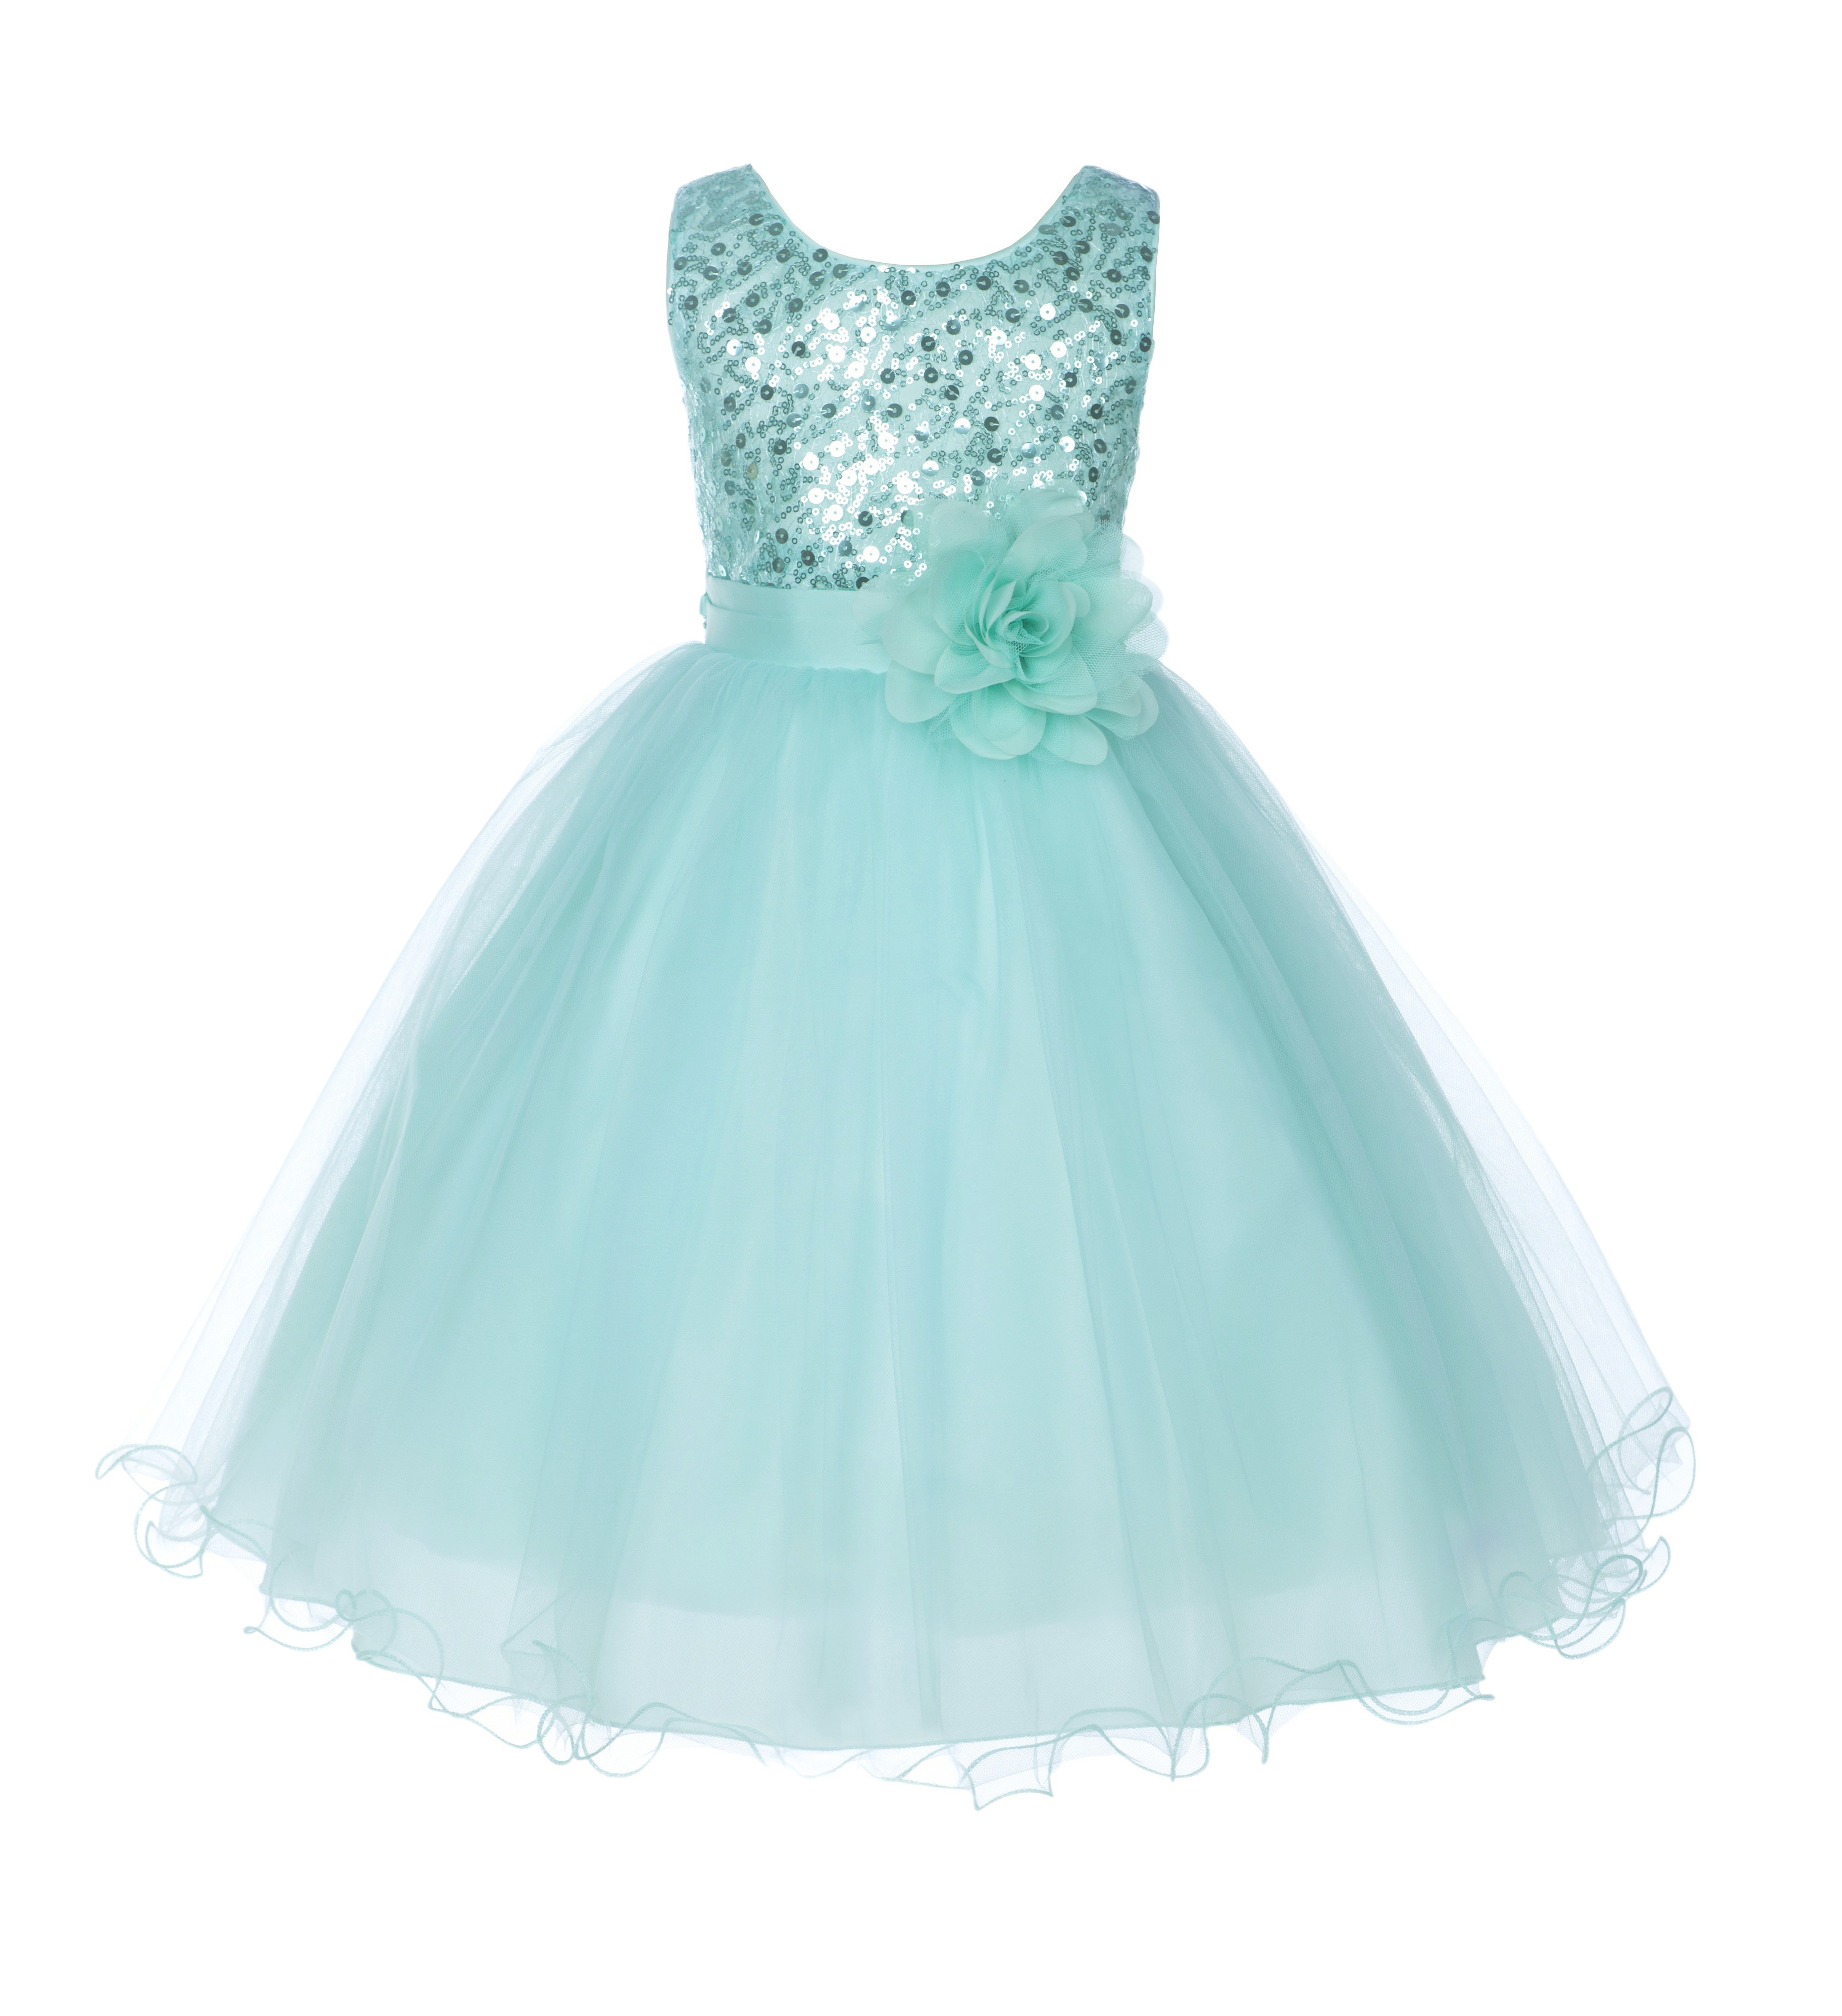 Mint Glitter Sequin Tulle Flower Girl Dress Formal Princess B-011NF